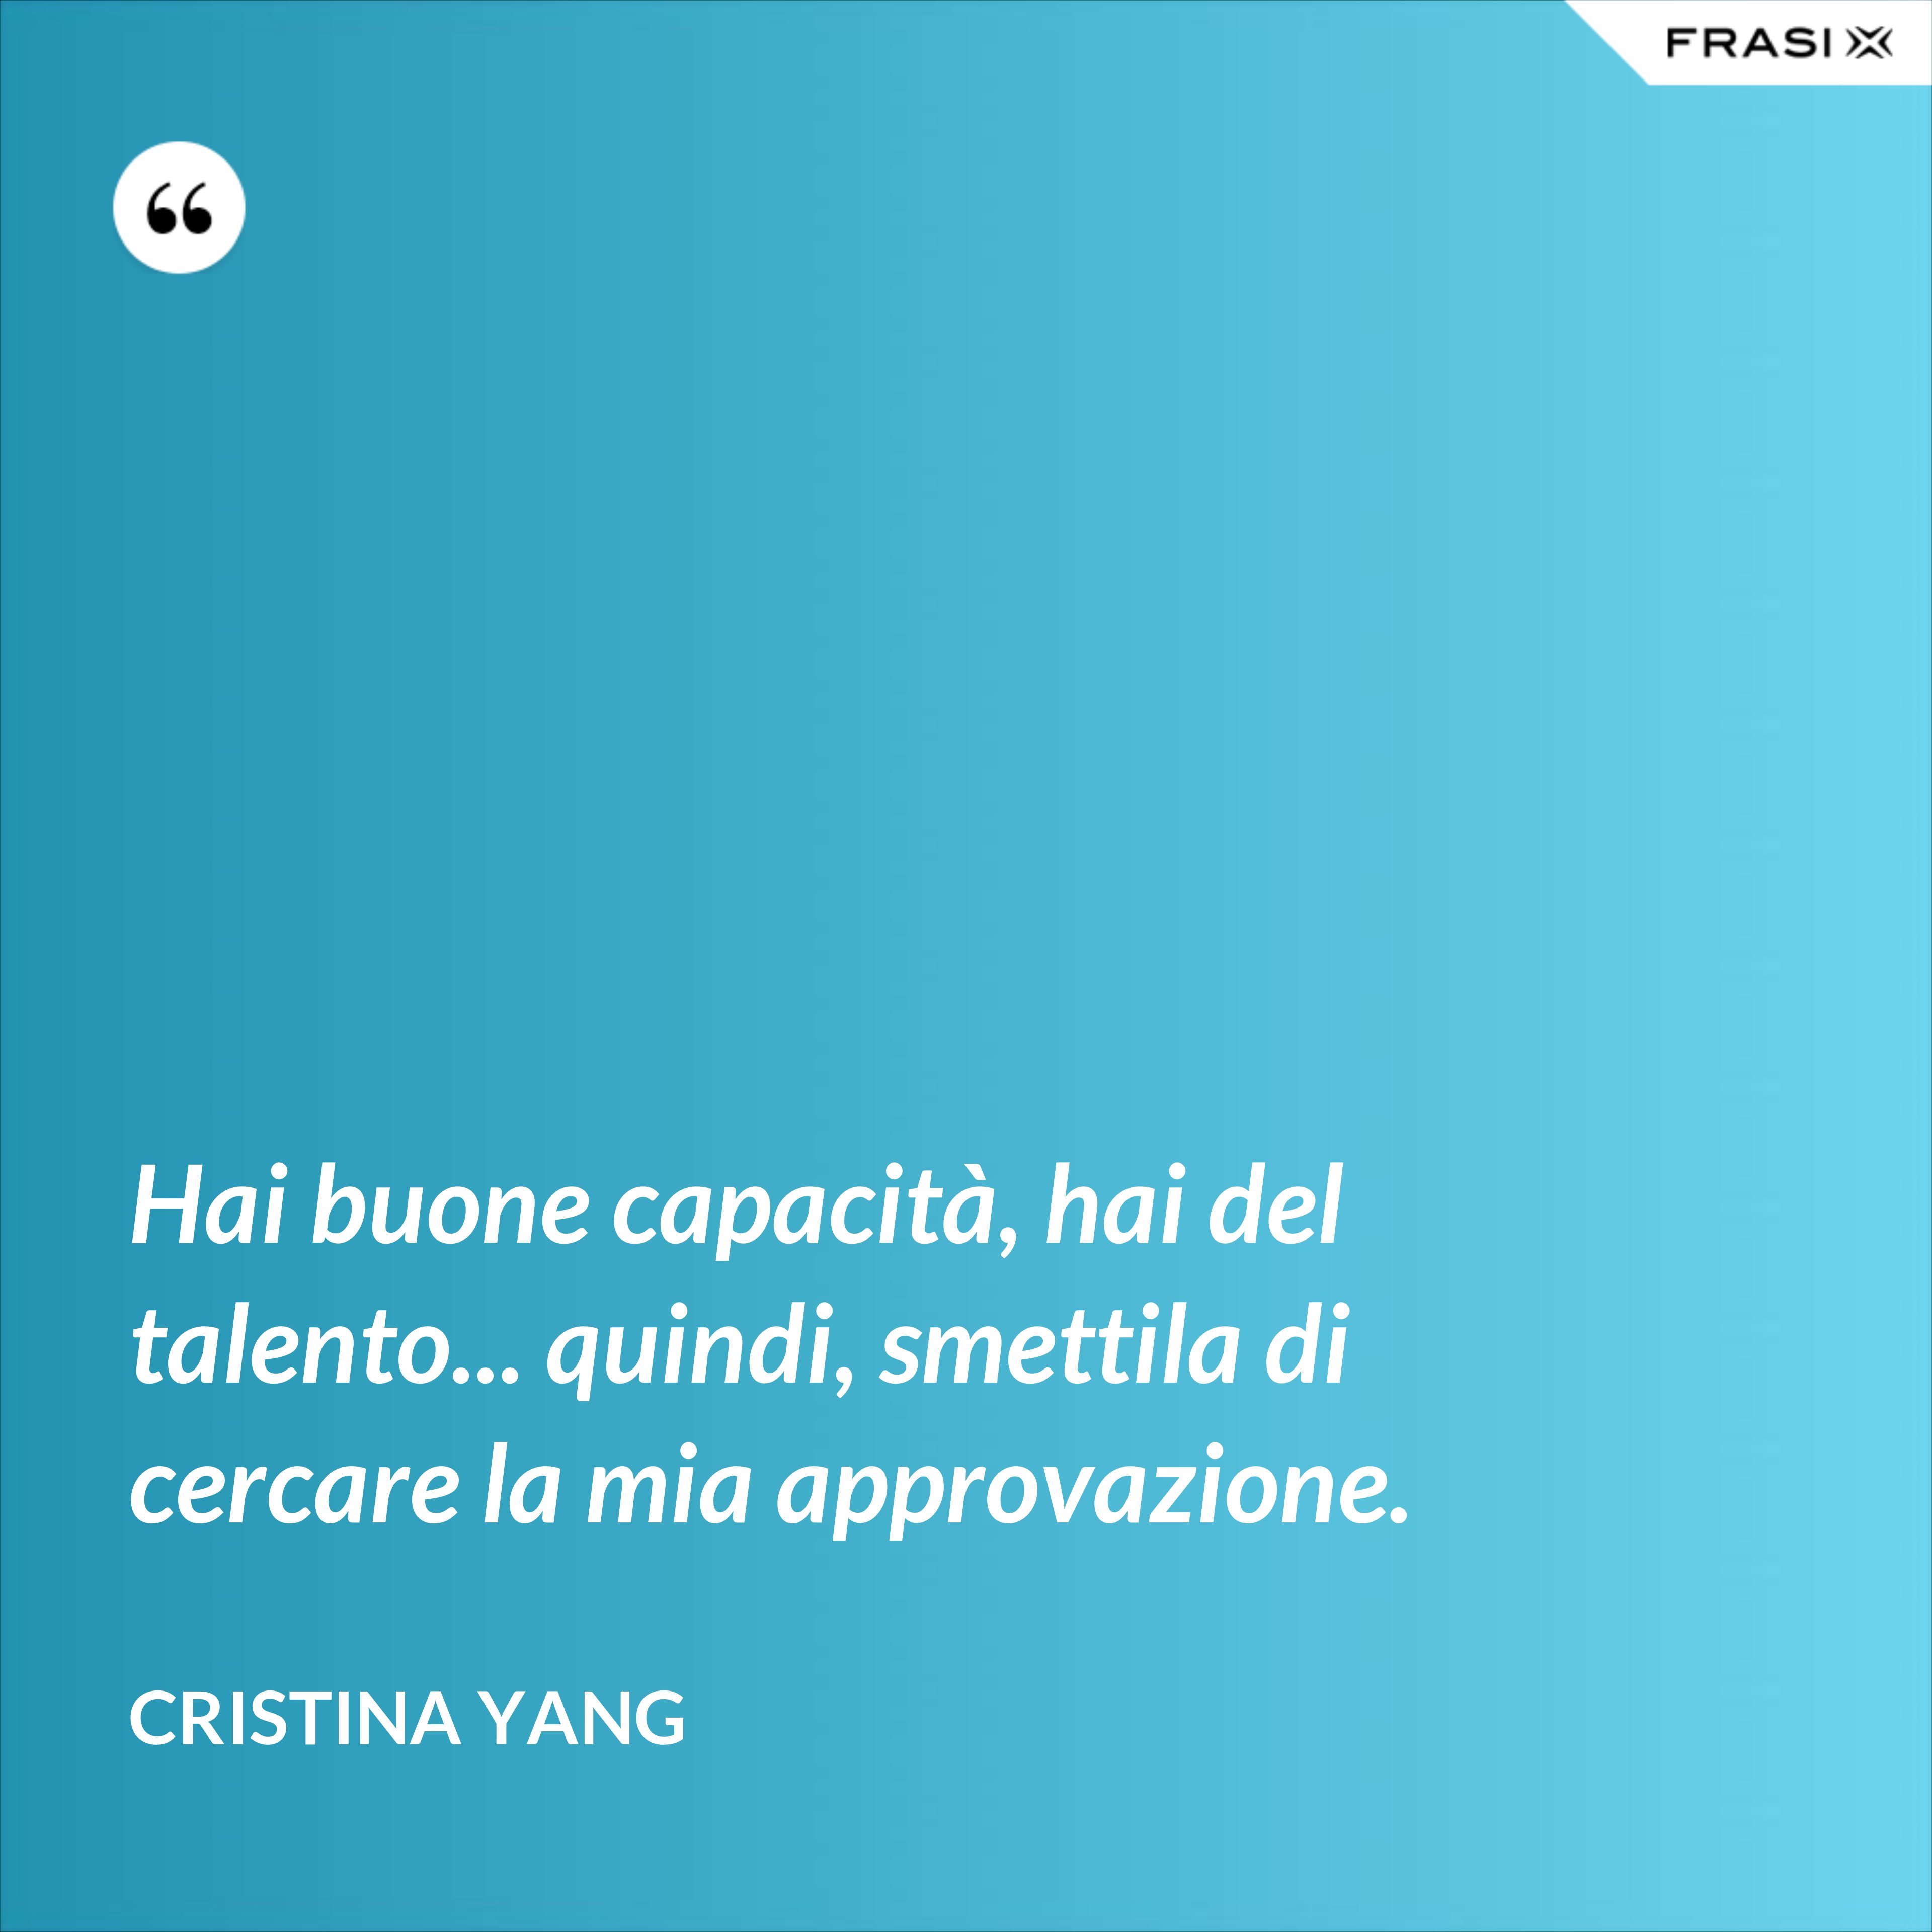 Hai buone capacità, hai del talento... quindi, smettila di cercare la mia approvazione. - Cristina Yang